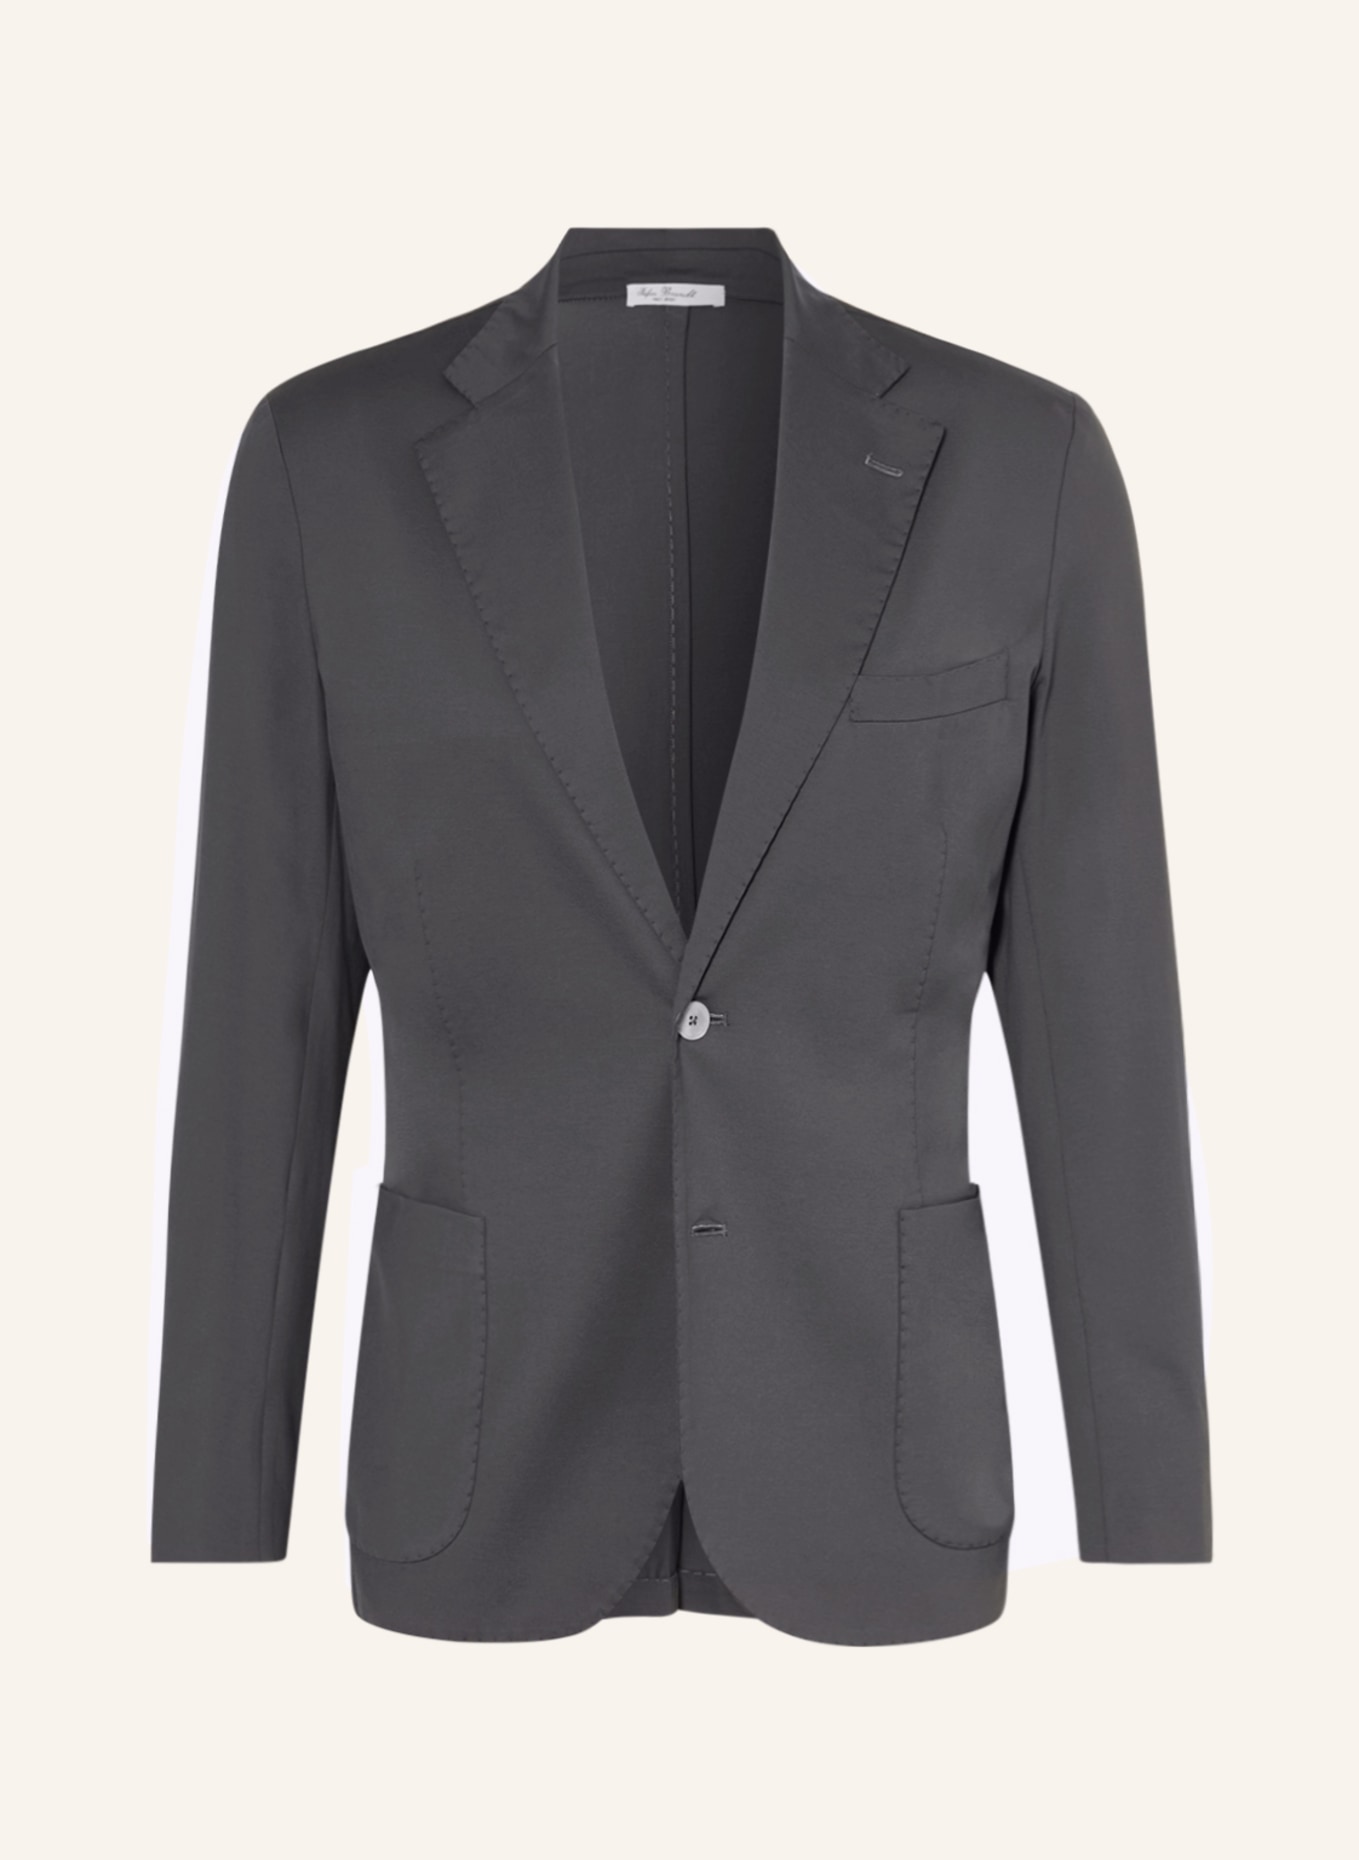 Stefan Brandt Jersey jacket ADRIAN SUPER extra slim fit, Color: GRAY (Image 1)